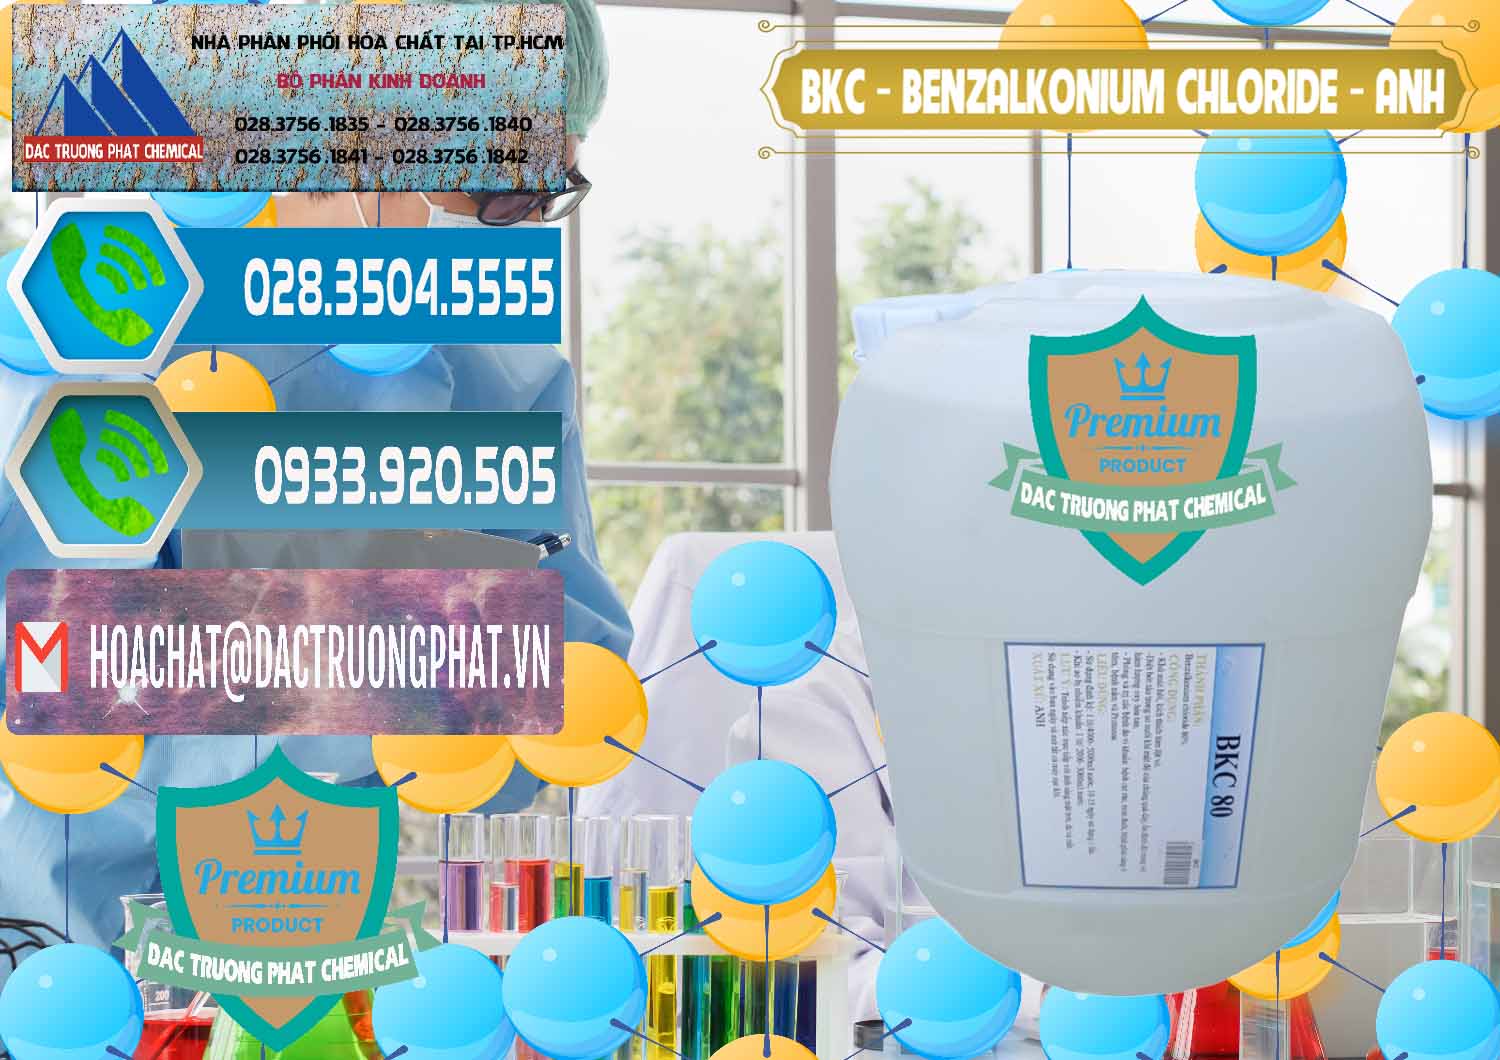 Cty chuyên cung ứng & bán BKC - Benzalkonium Chloride Anh Quốc Uk Kingdoms - 0415 - Cty cung cấp & phân phối hóa chất tại TP.HCM - congtyhoachat.net